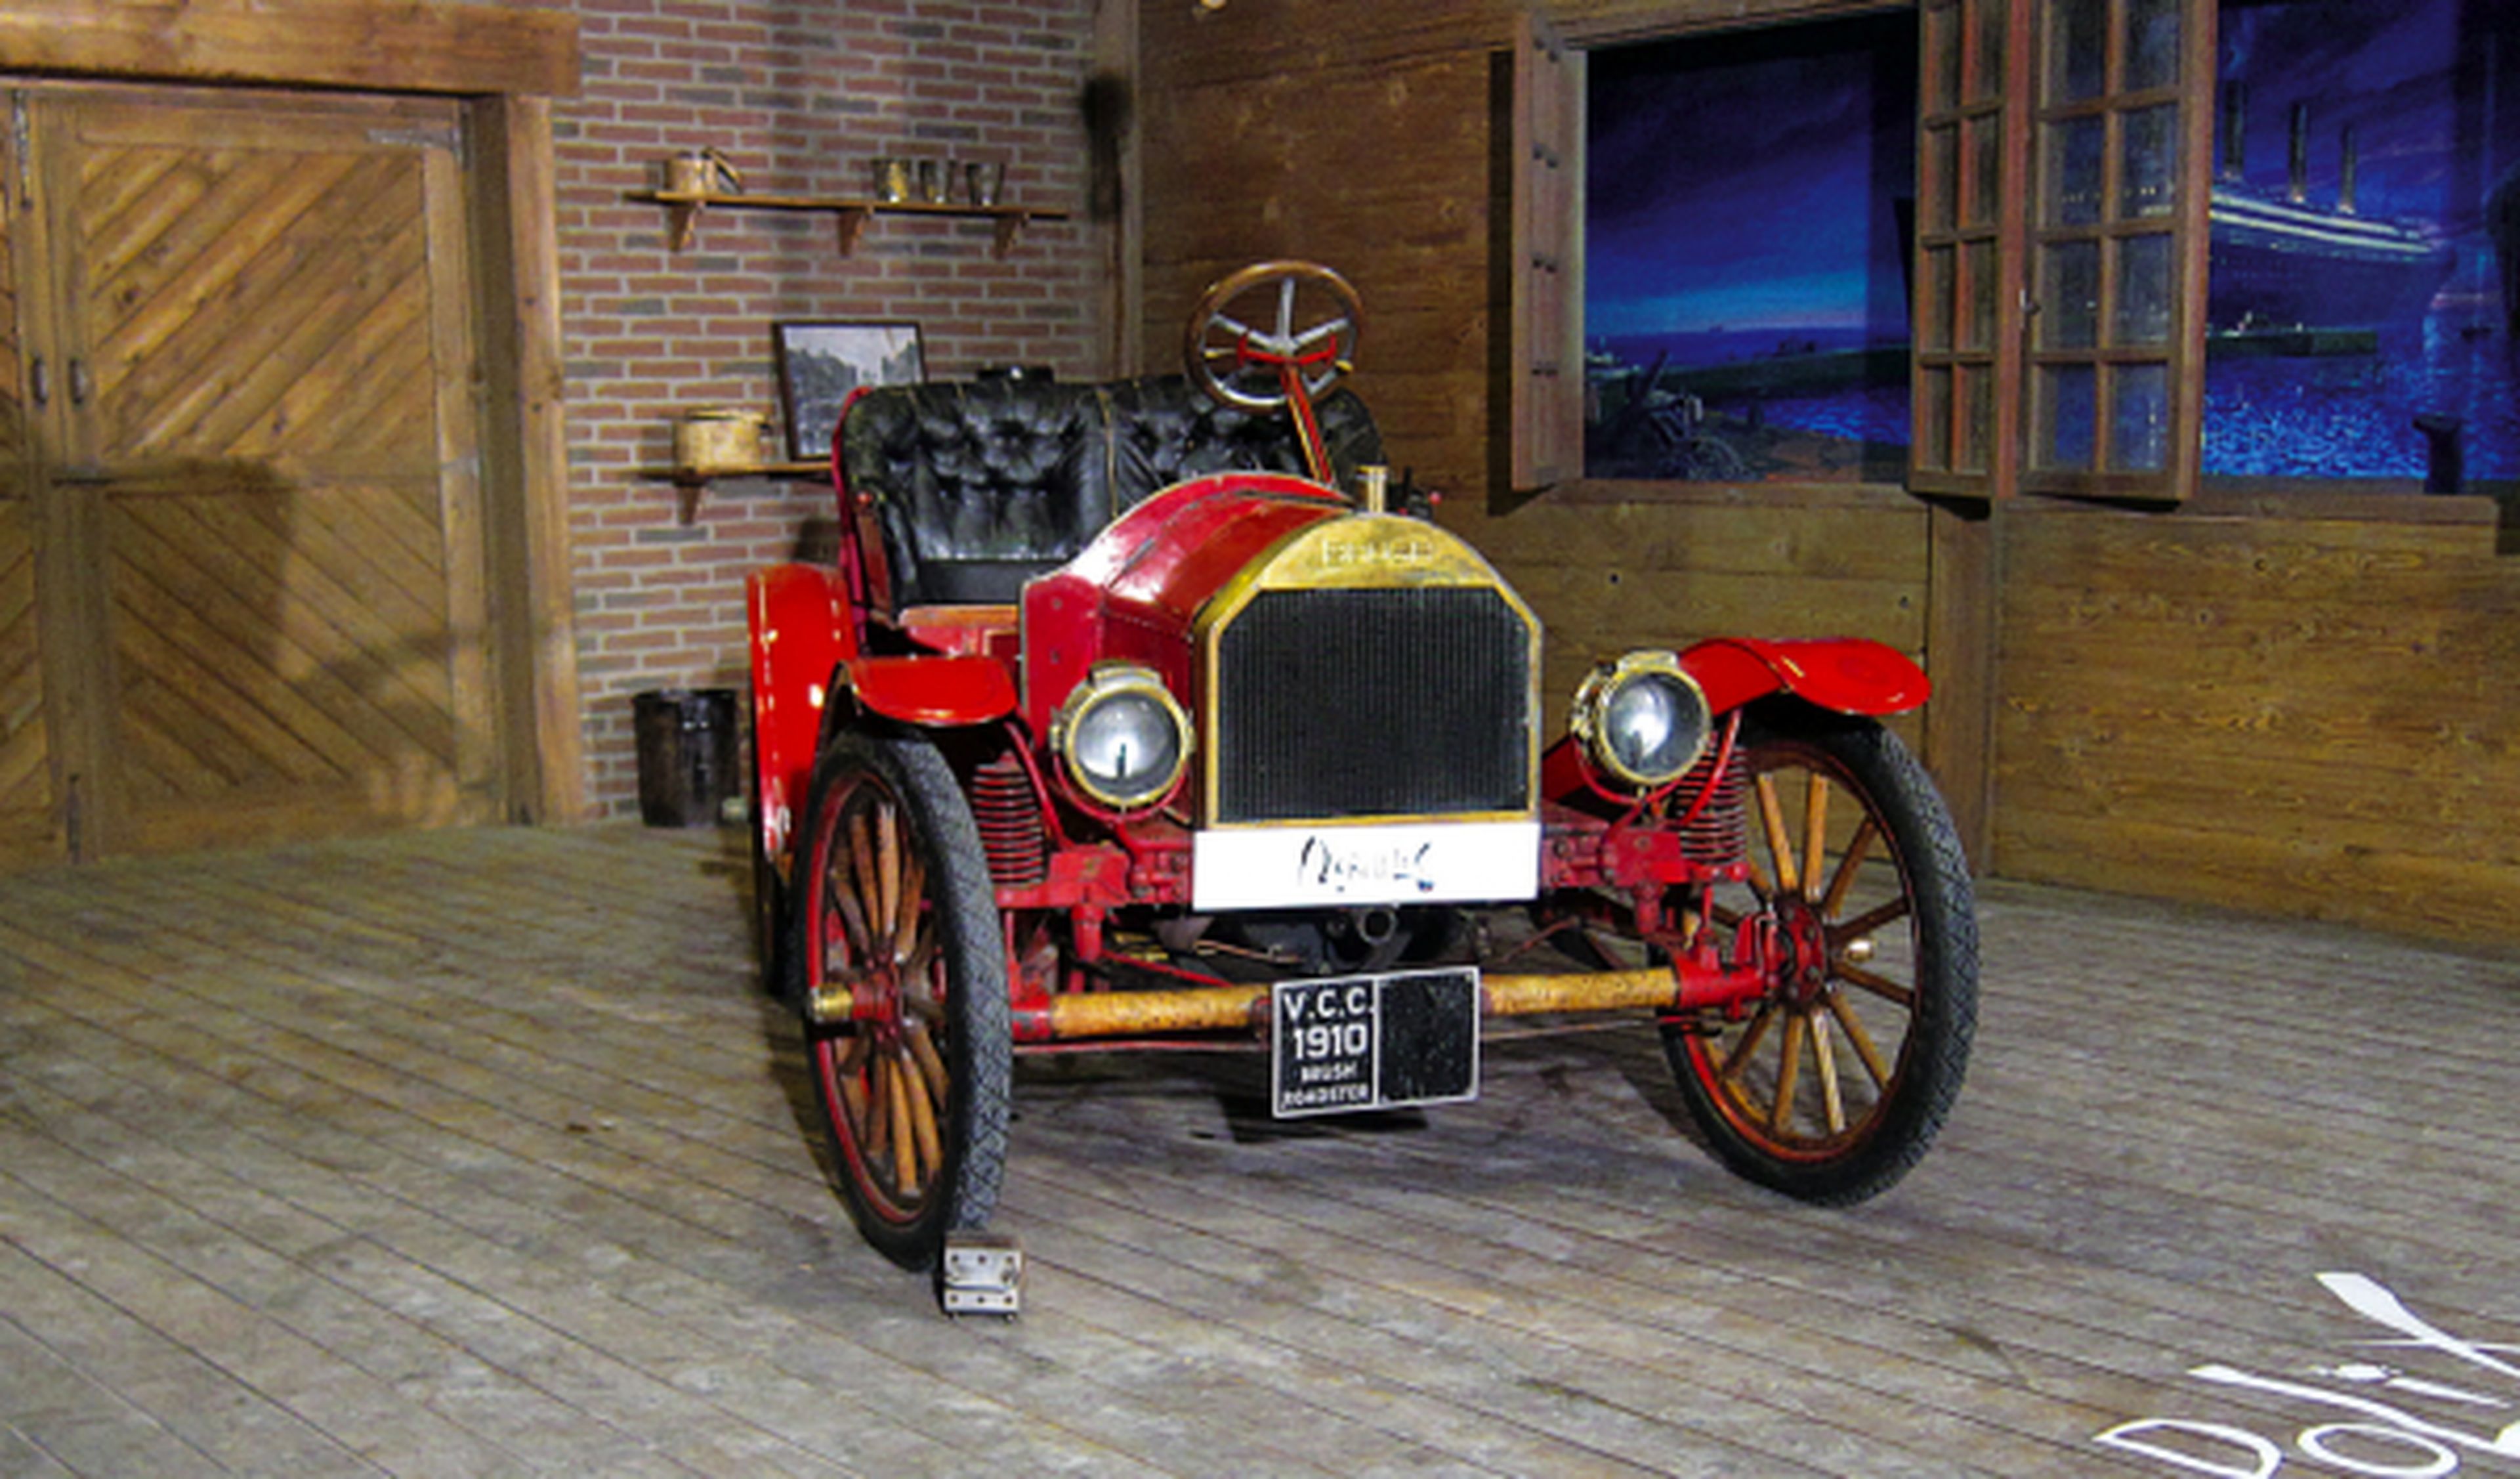 El coche del Titanic, en el Salón de Vehículos clásicos de Ficoba